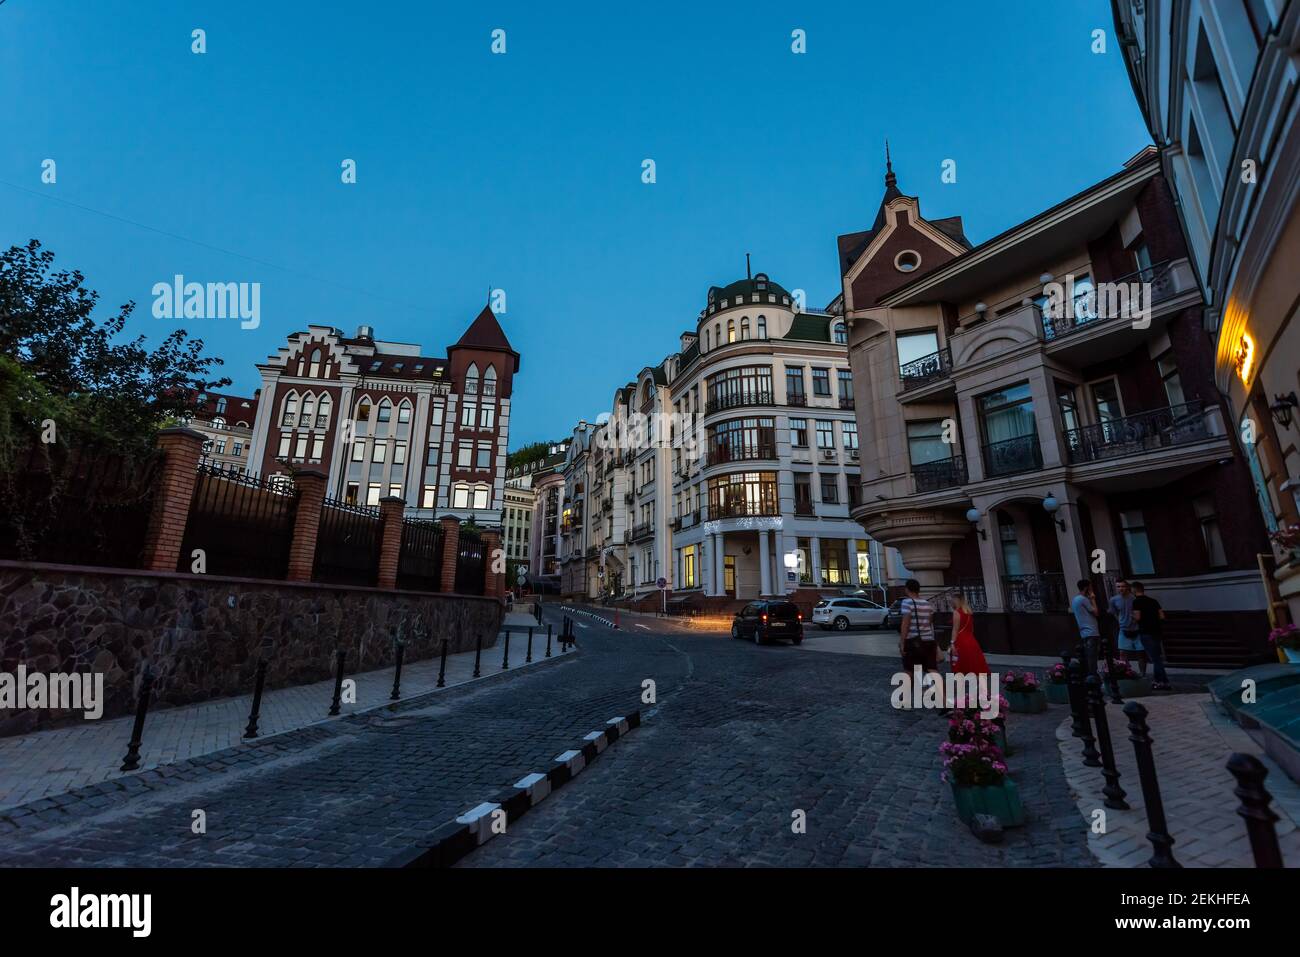 Kiew, Ukraine - 10. August 2018: Altstadt restaurierte Straßenbauten der Stadt Kiew in Podil wozdvizhenka Häuser Park am Abend und die Menschen Stockfoto